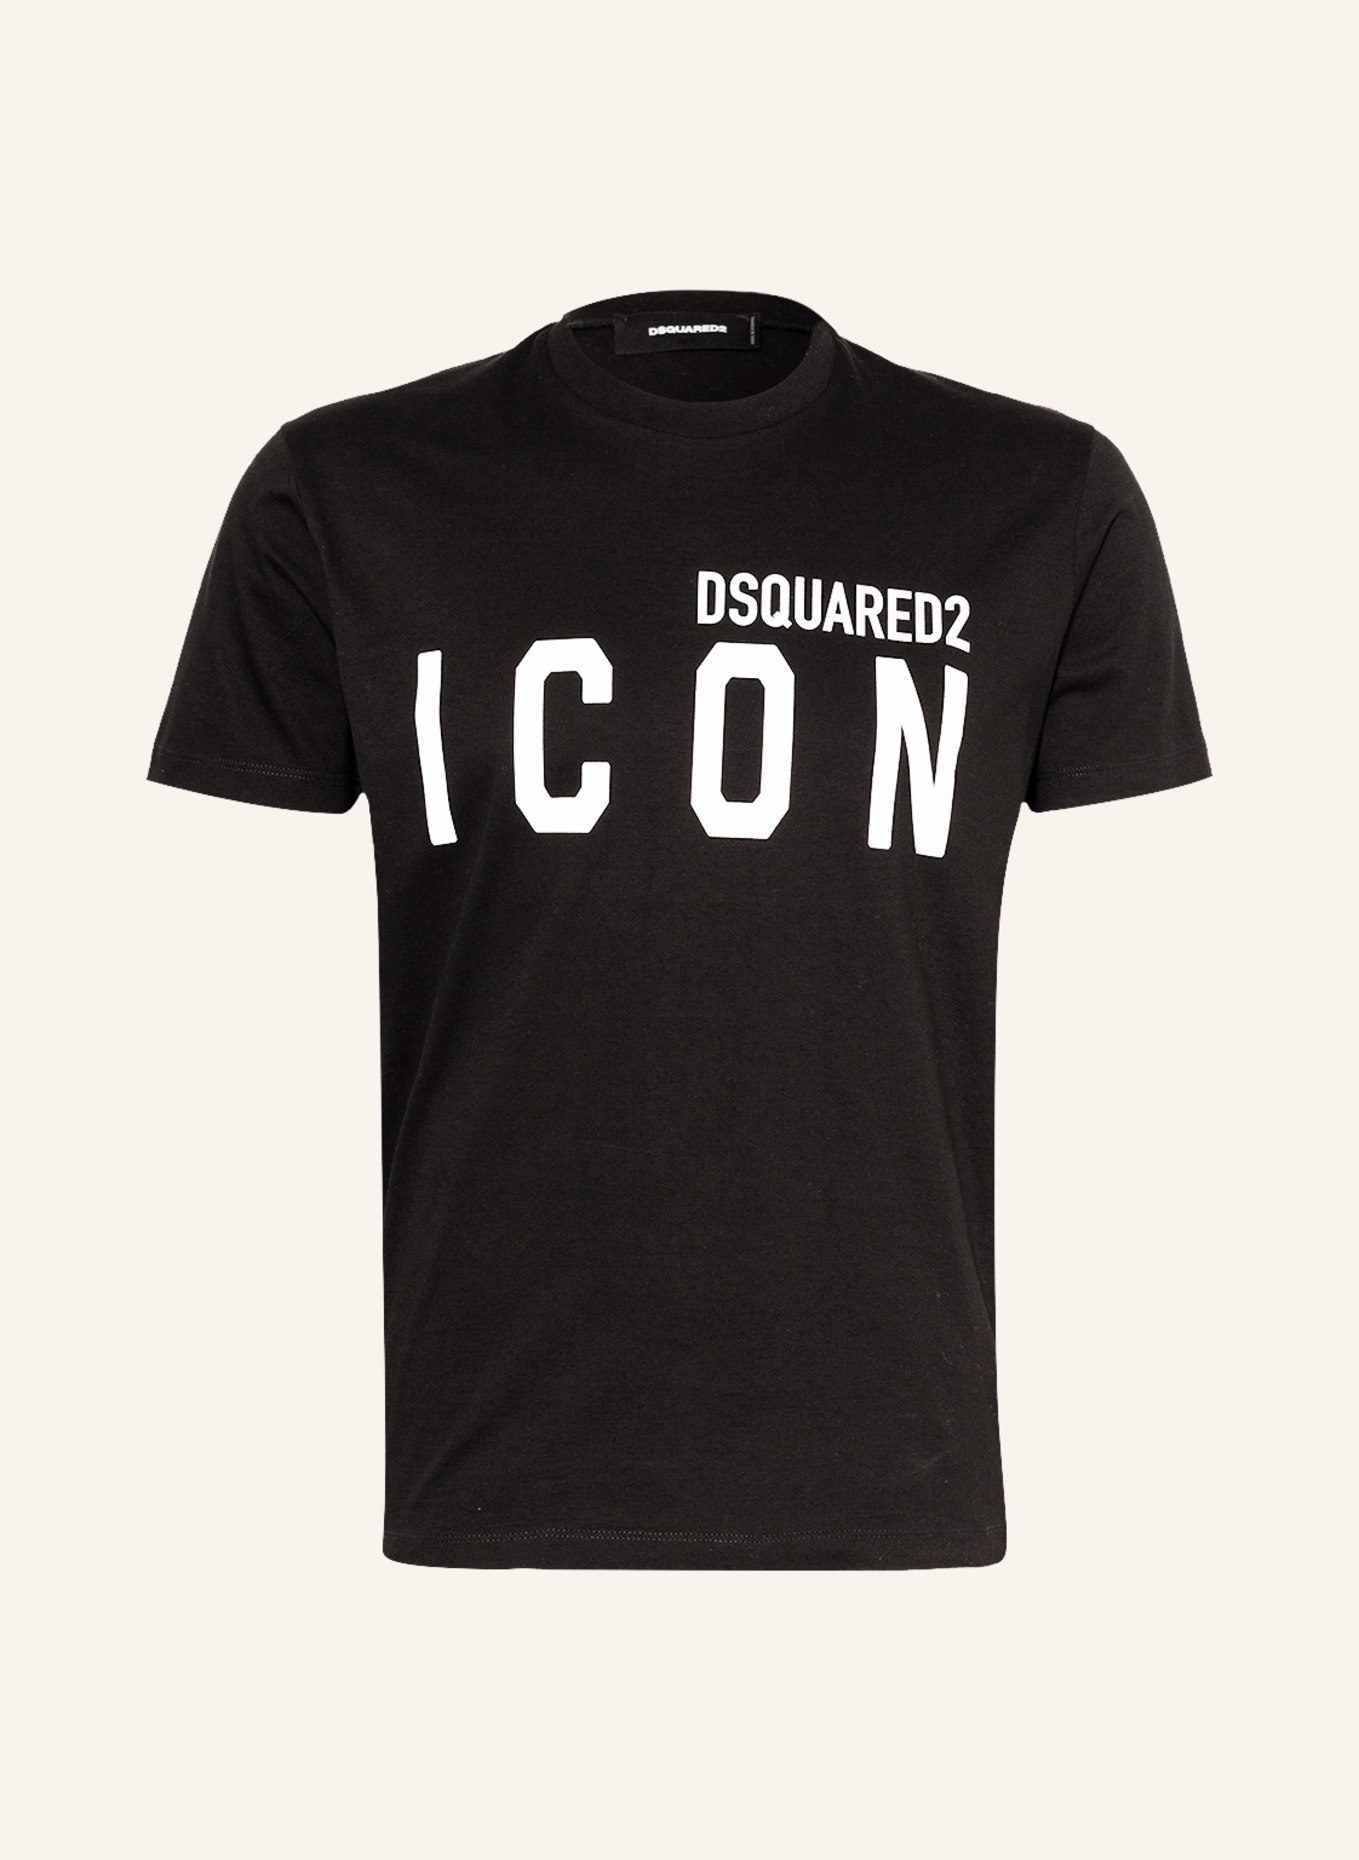 DSQUARED2 T-Shirt ICON, Farbe: SCHWARZ/ WEISS (Bild 1)